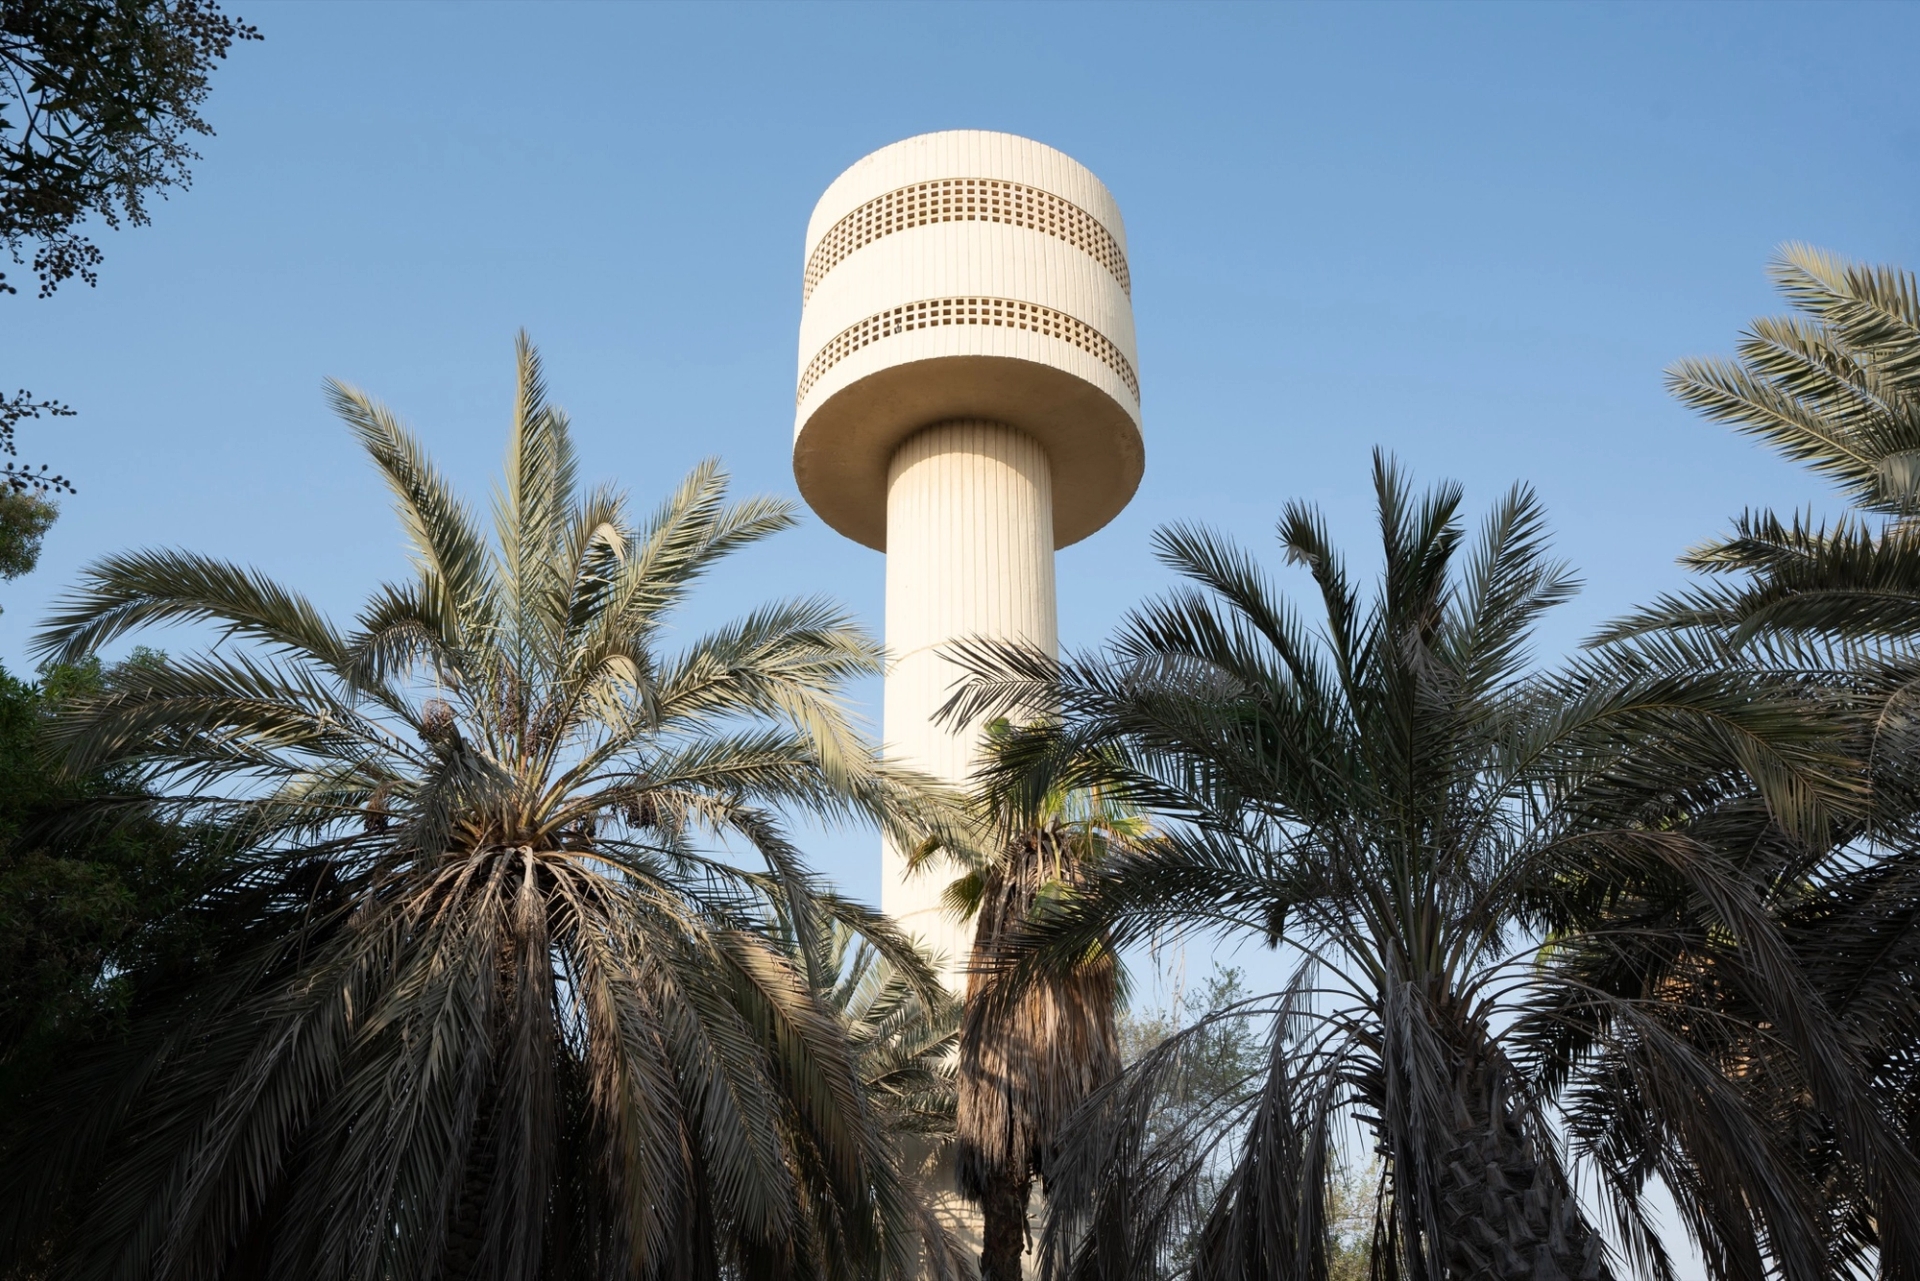 Al Gubaiba School Water Tower Garden. Courtesy of Sharjah Architecture Triennial, 2019.